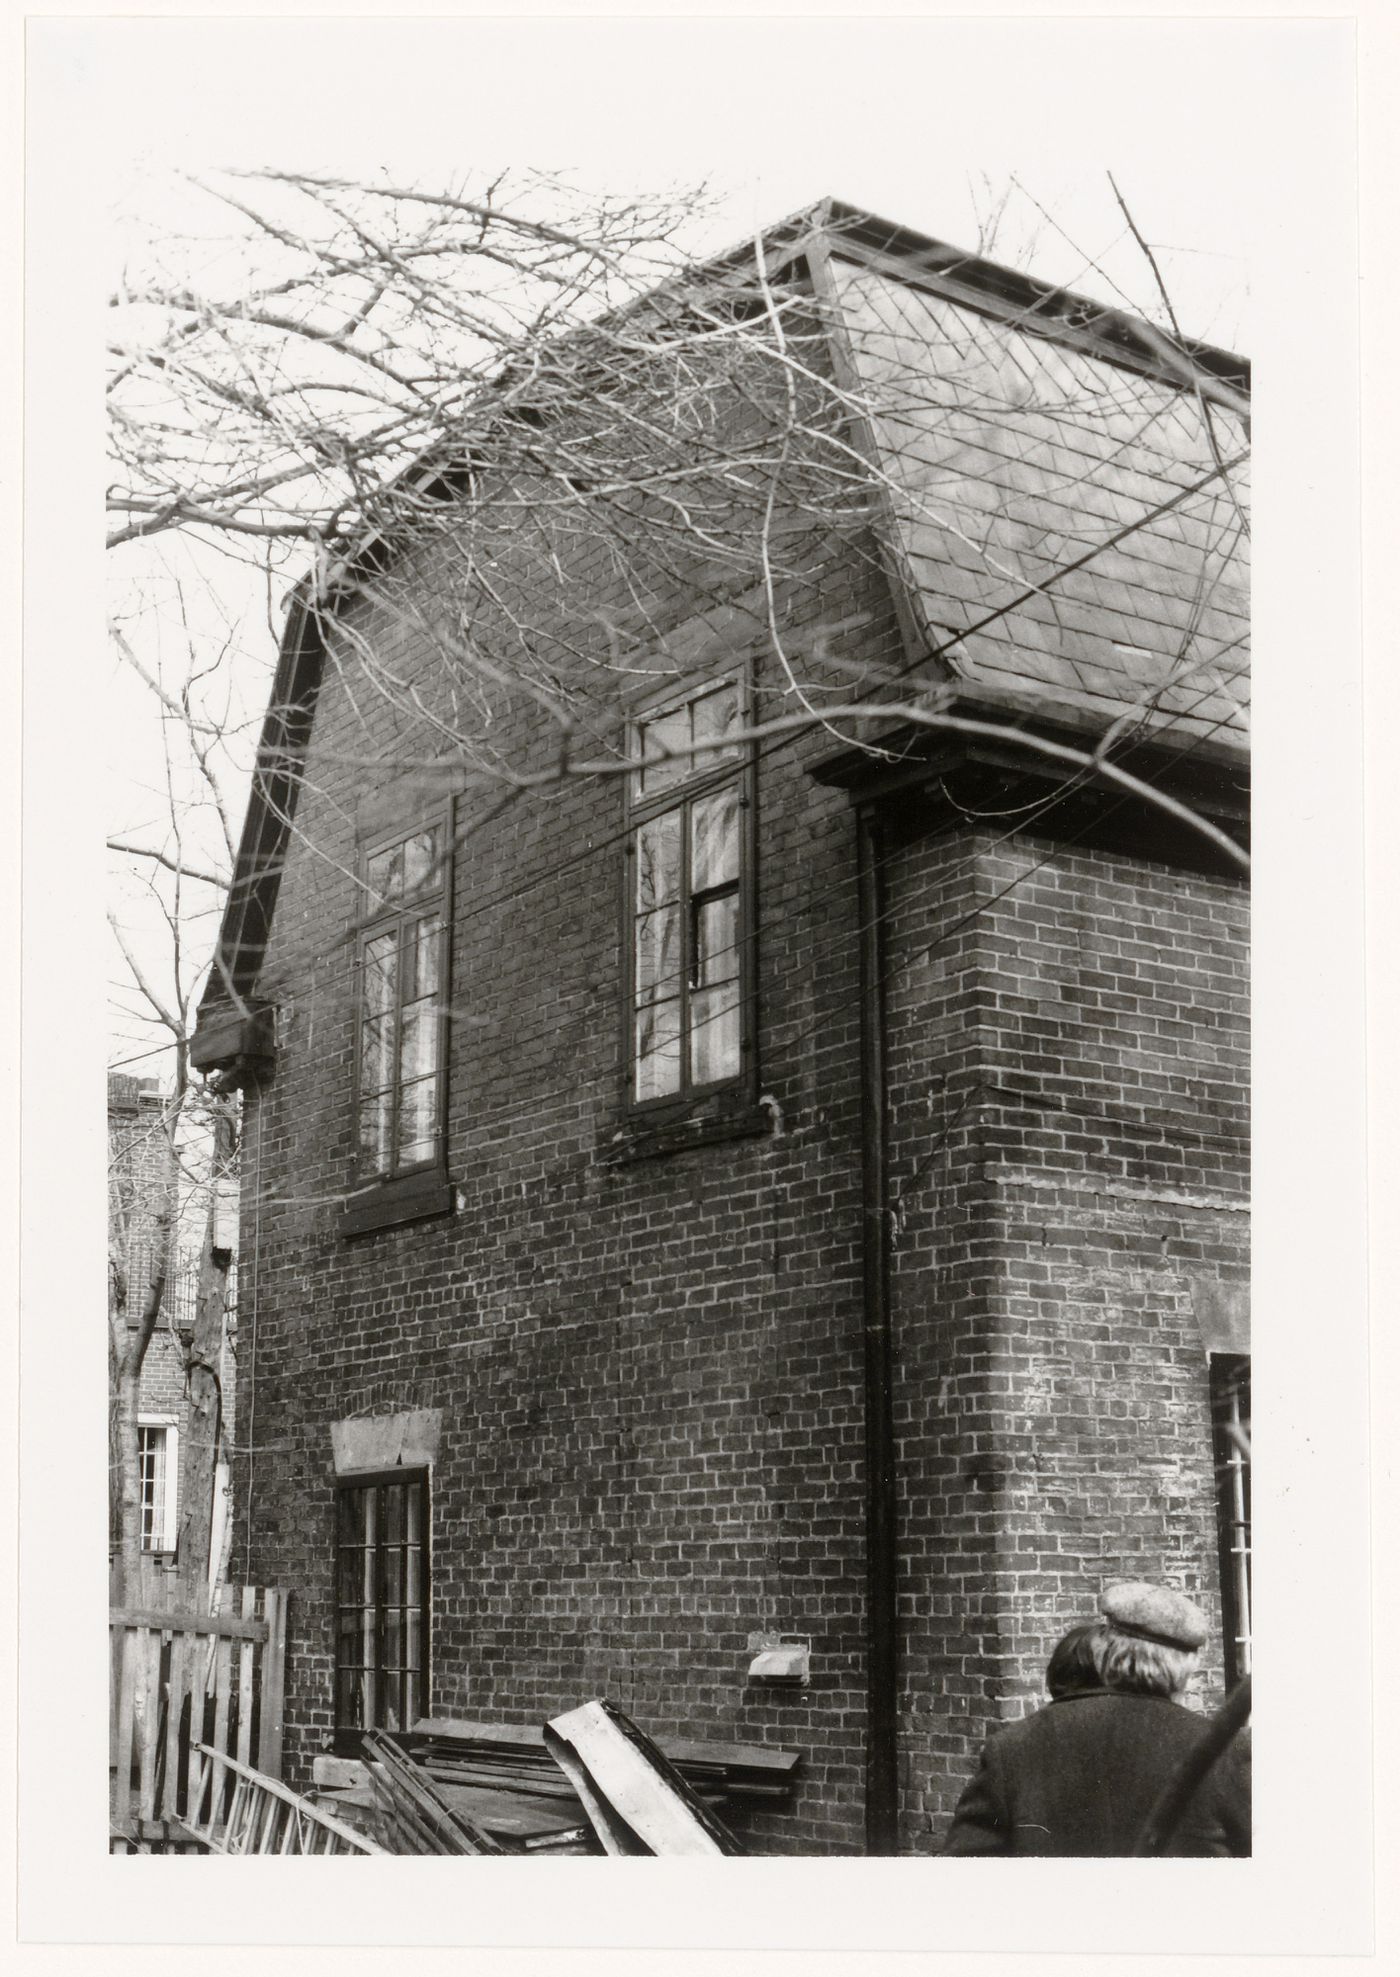 View of the lateral and rear façades of Maison Justine-Solomée-Hurtubise, 513-515 chemin de la Côte-Saint-Antoine, Westmount, Québec